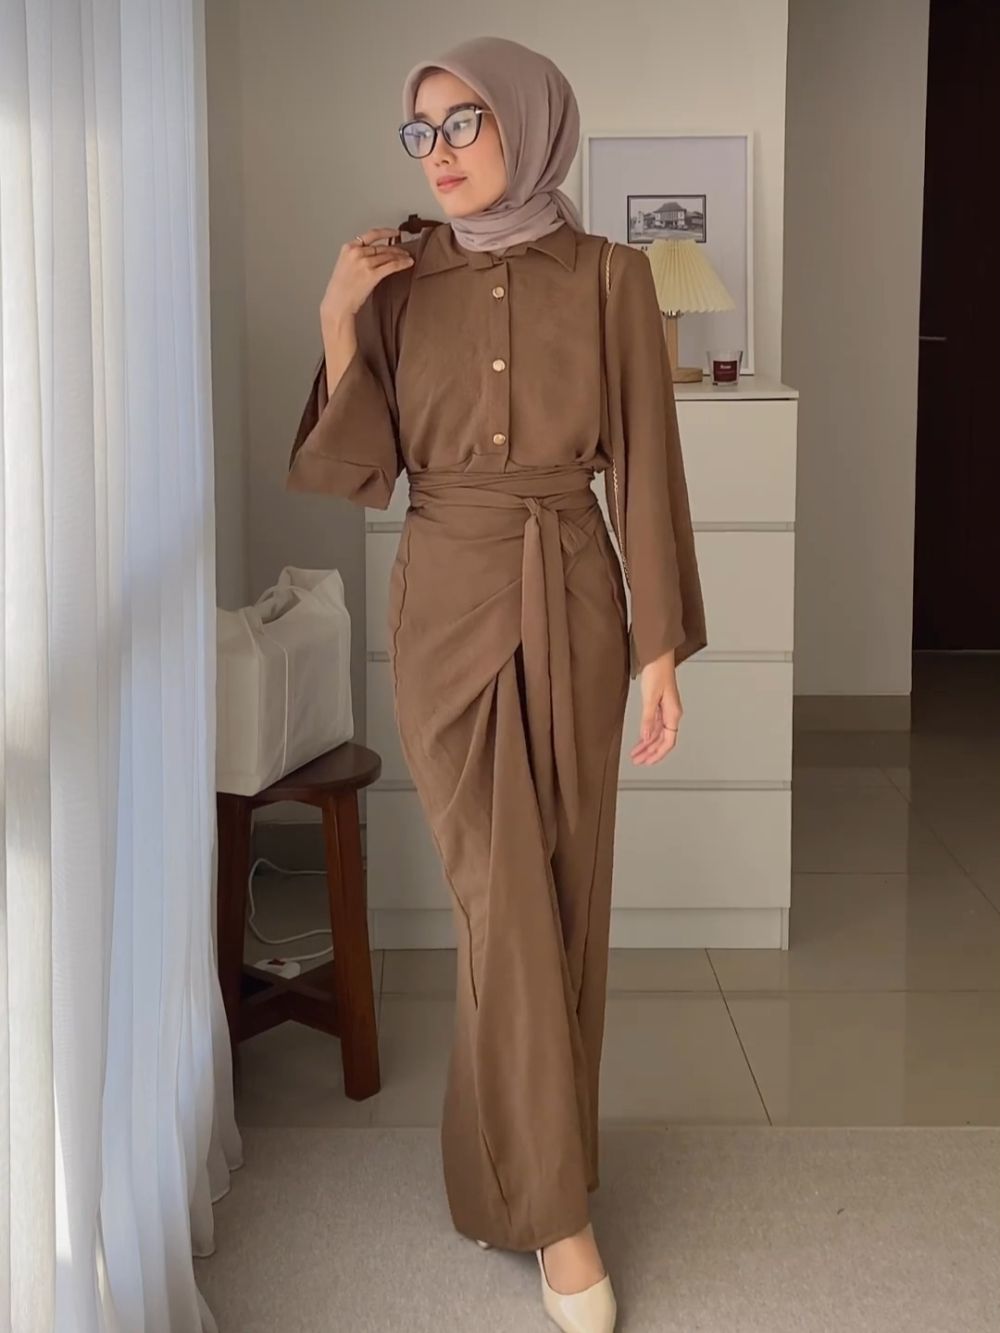 9 Ide Outfit Hijab Earth Tone untuk Lebaran, Cetar Abis!